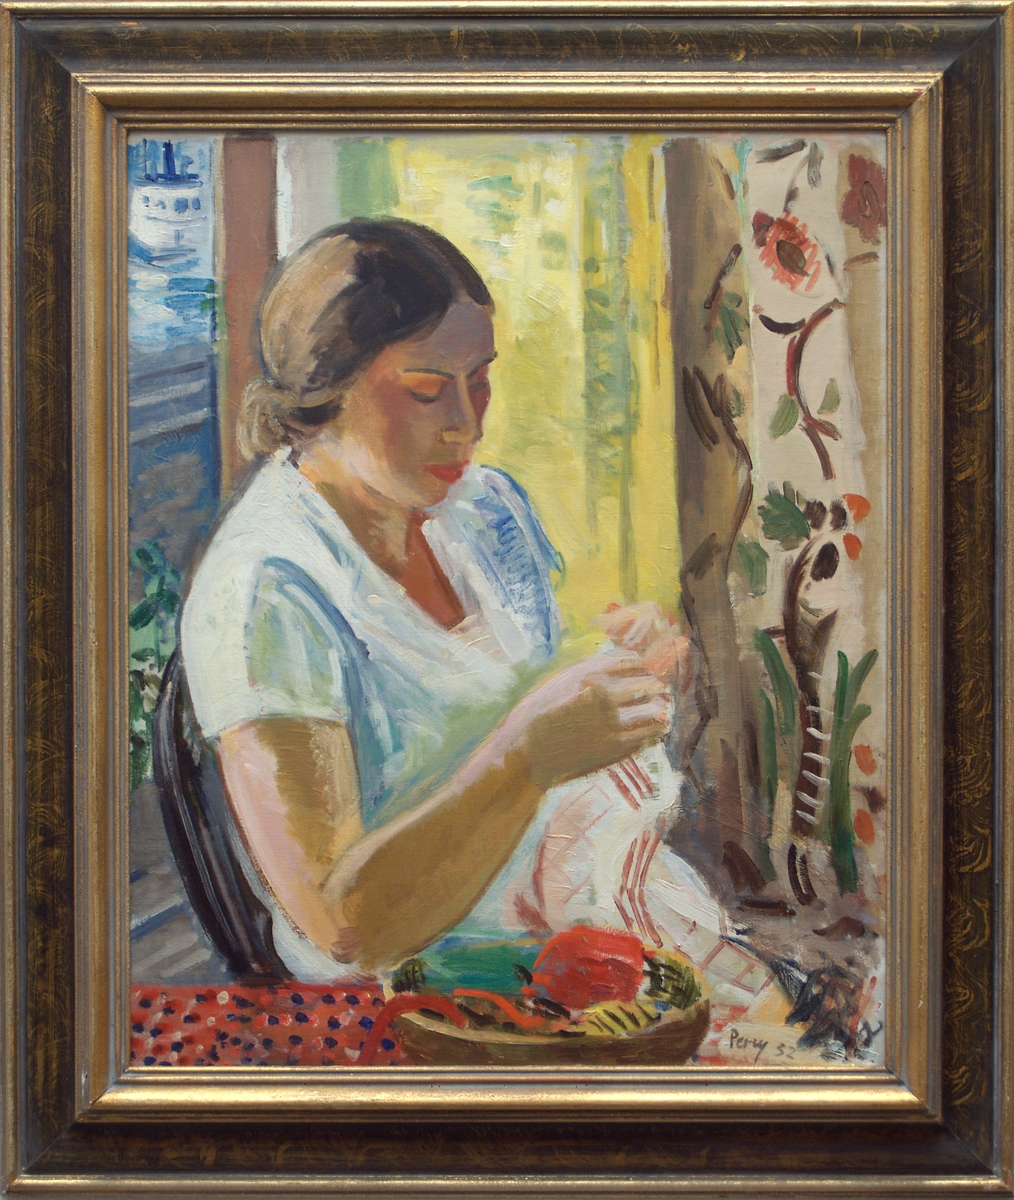 Oljemålning på duk, "Vid sybordet" av Arthur C:son Percy. Kvinna i knäbild sitter vänd åt höger och syr, i förgrunden skål med sysaker; t.v. i bakgrundenskymtar ett fönster, t.h. blommigt draperi. Modellen är konstnärens hustru Kerstin Percy.